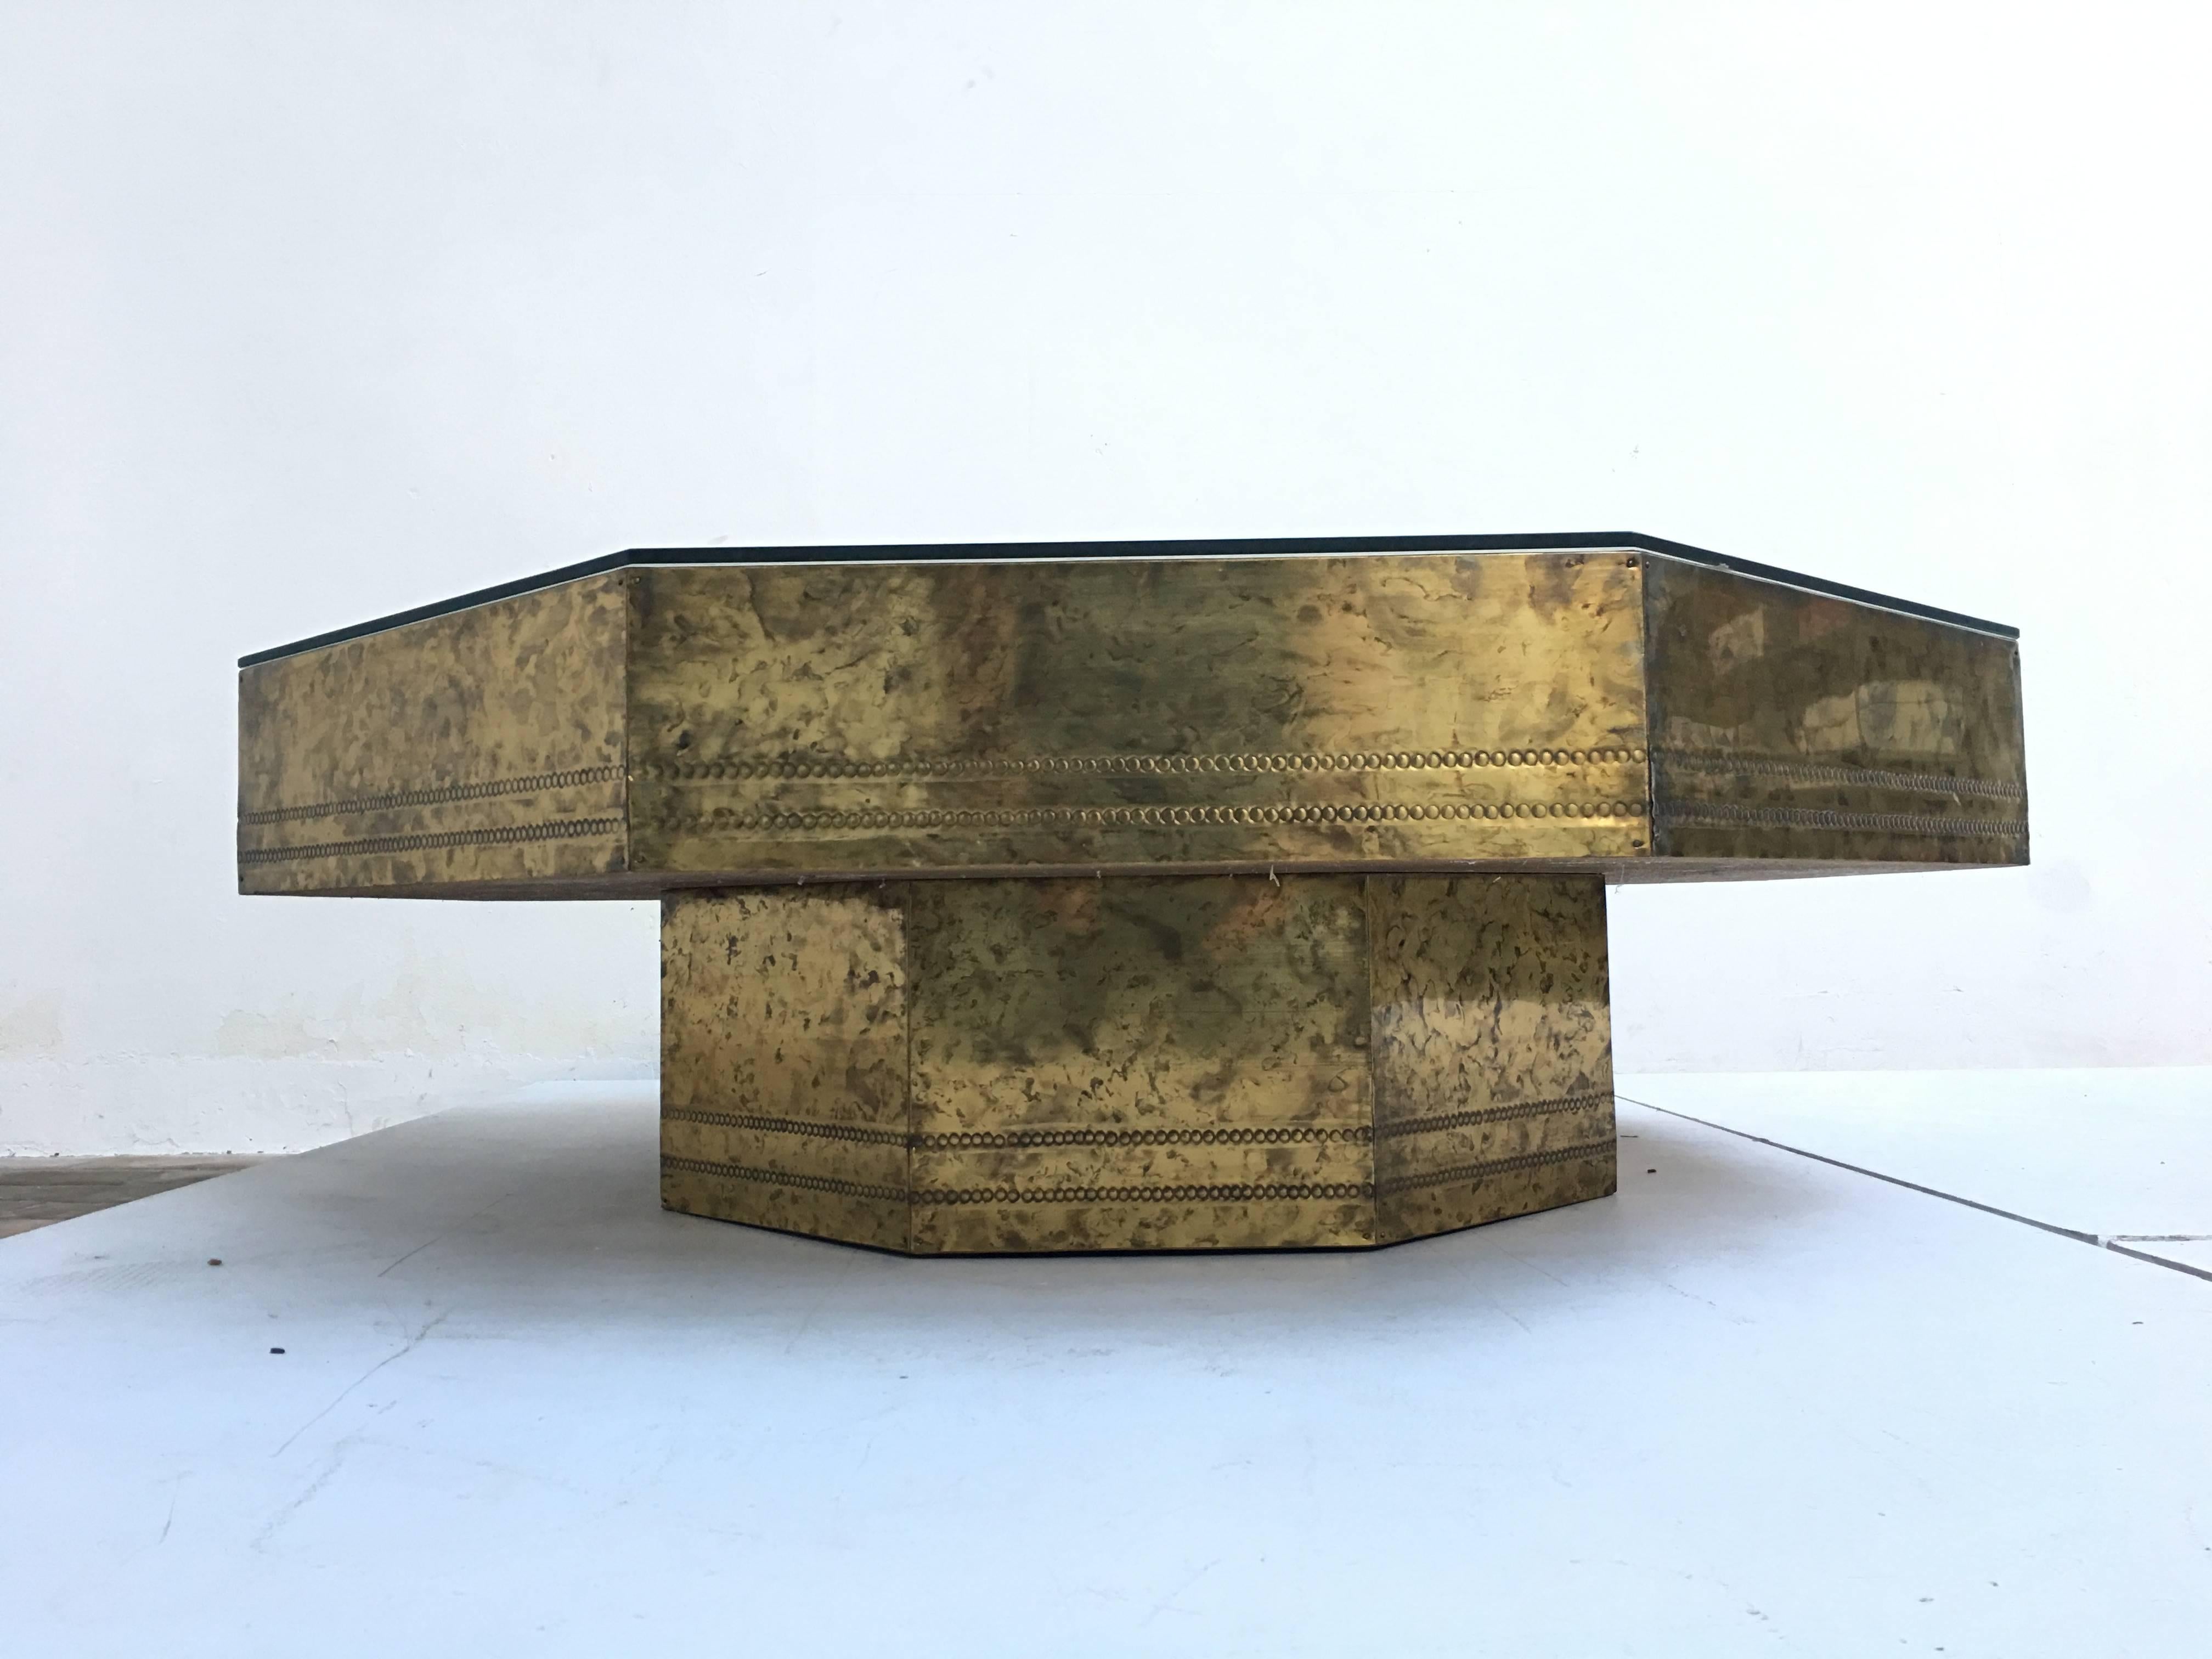 Schöner Couchtisch aus säuregeätztem Messing aus den 1970er Jahren in attraktiver Achteckform von Bildhauer Bernard Rohne für 'Mastercraft', U.S.A.

Dieser handwerklich gefertigte Tisch zeichnet sich durch eine schöne Mischung aus massiven